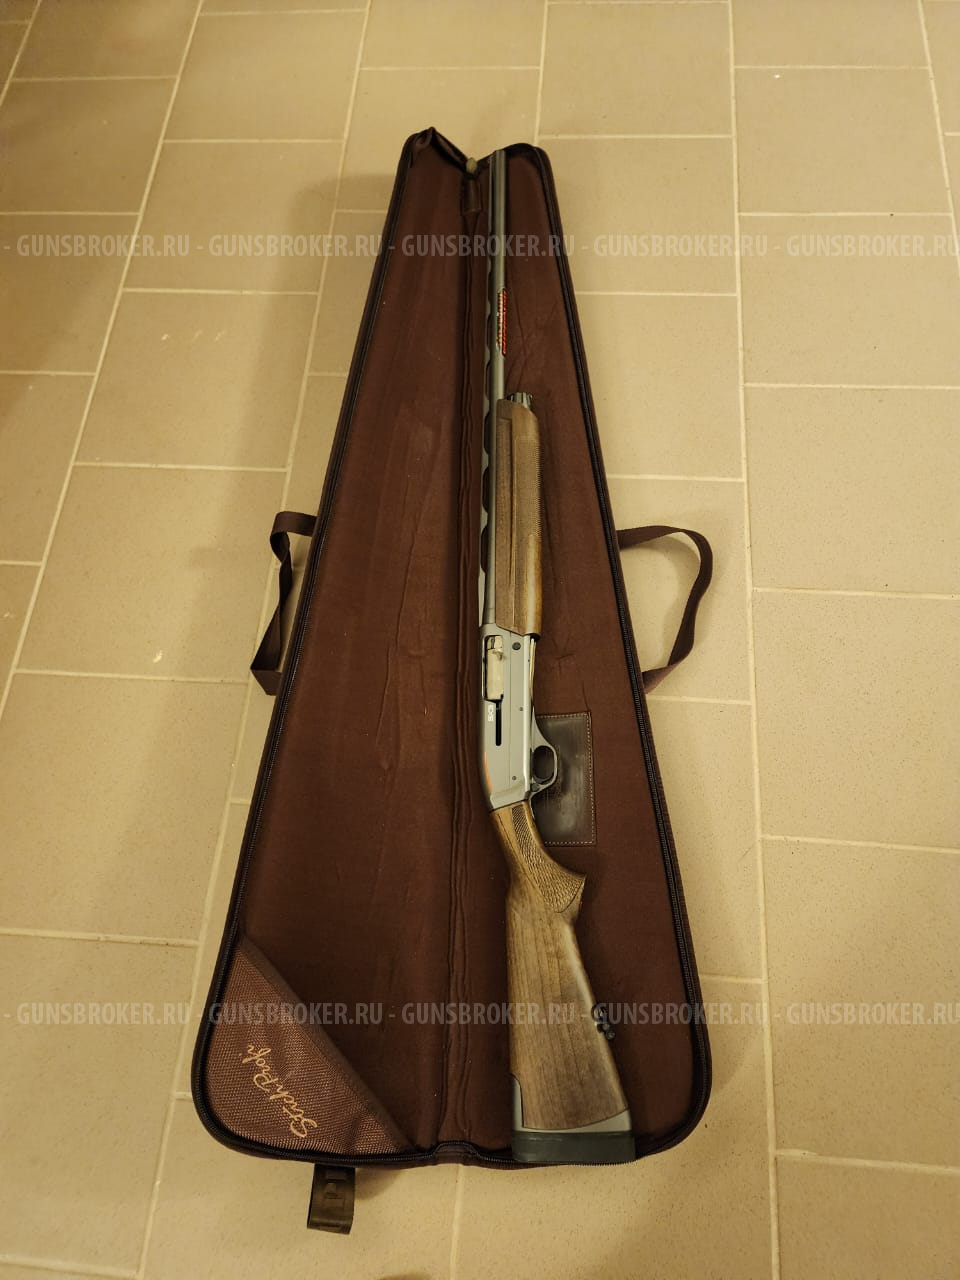 Winchester SX3